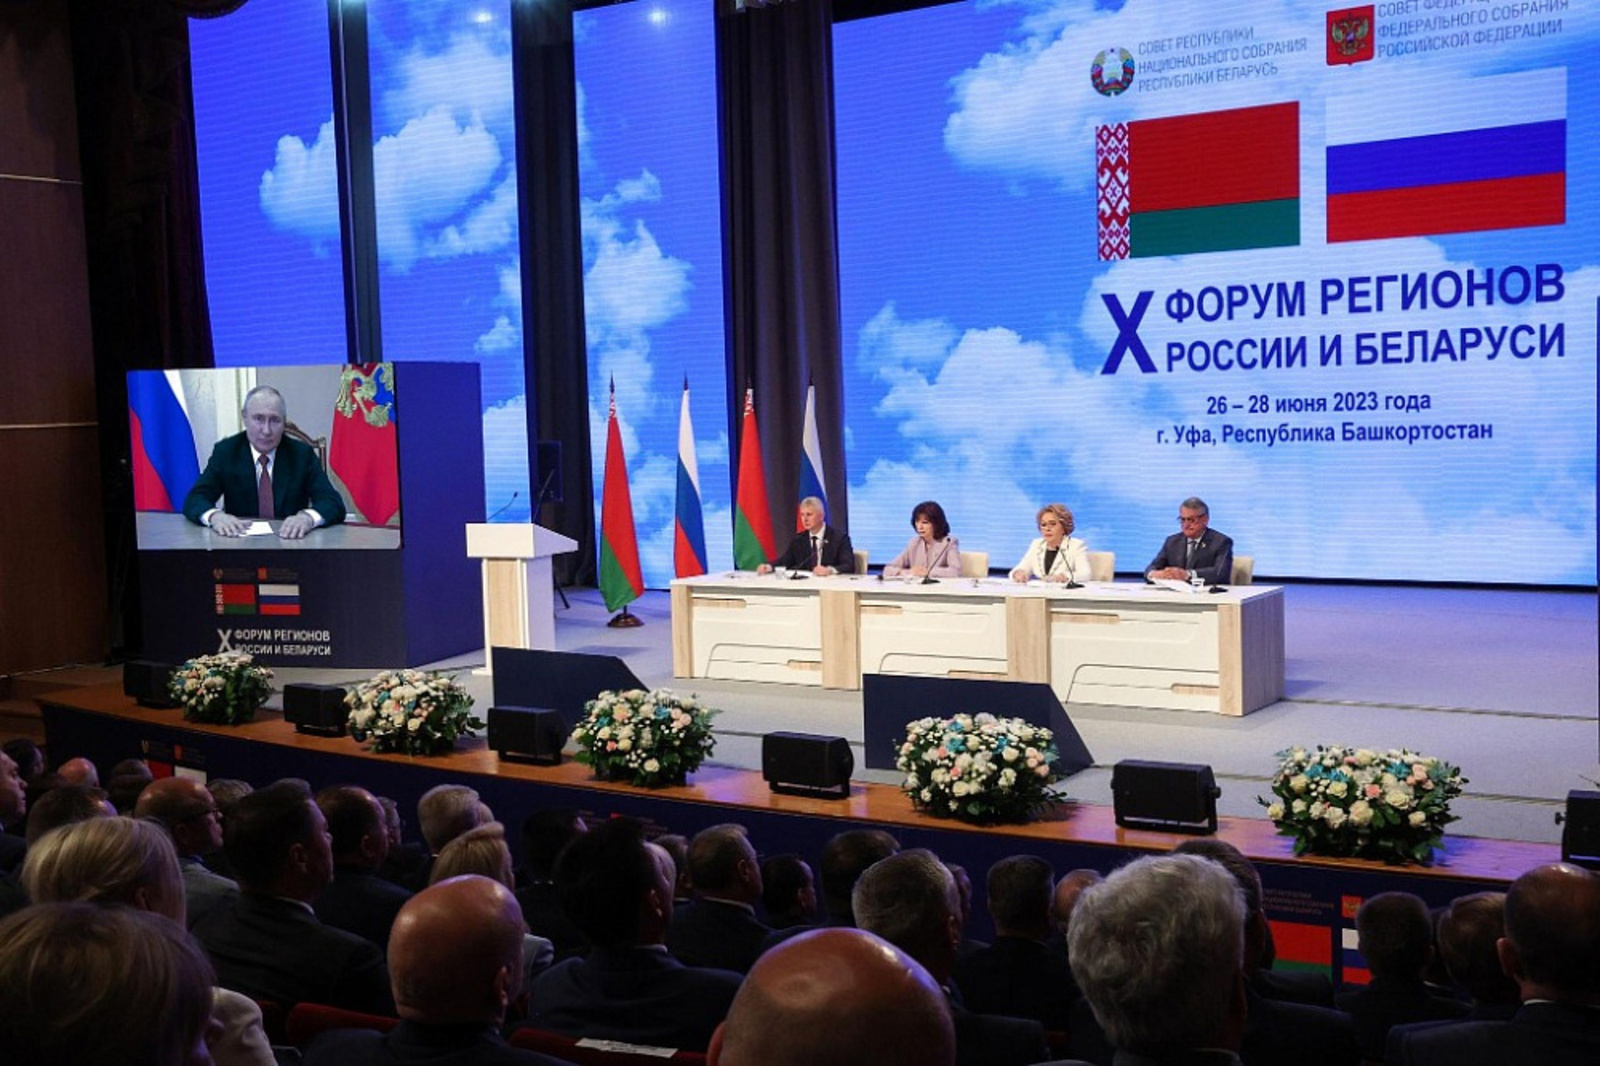 Радий Хабиров выступил на пленарном заседании X Форума регионов России и Беларуси